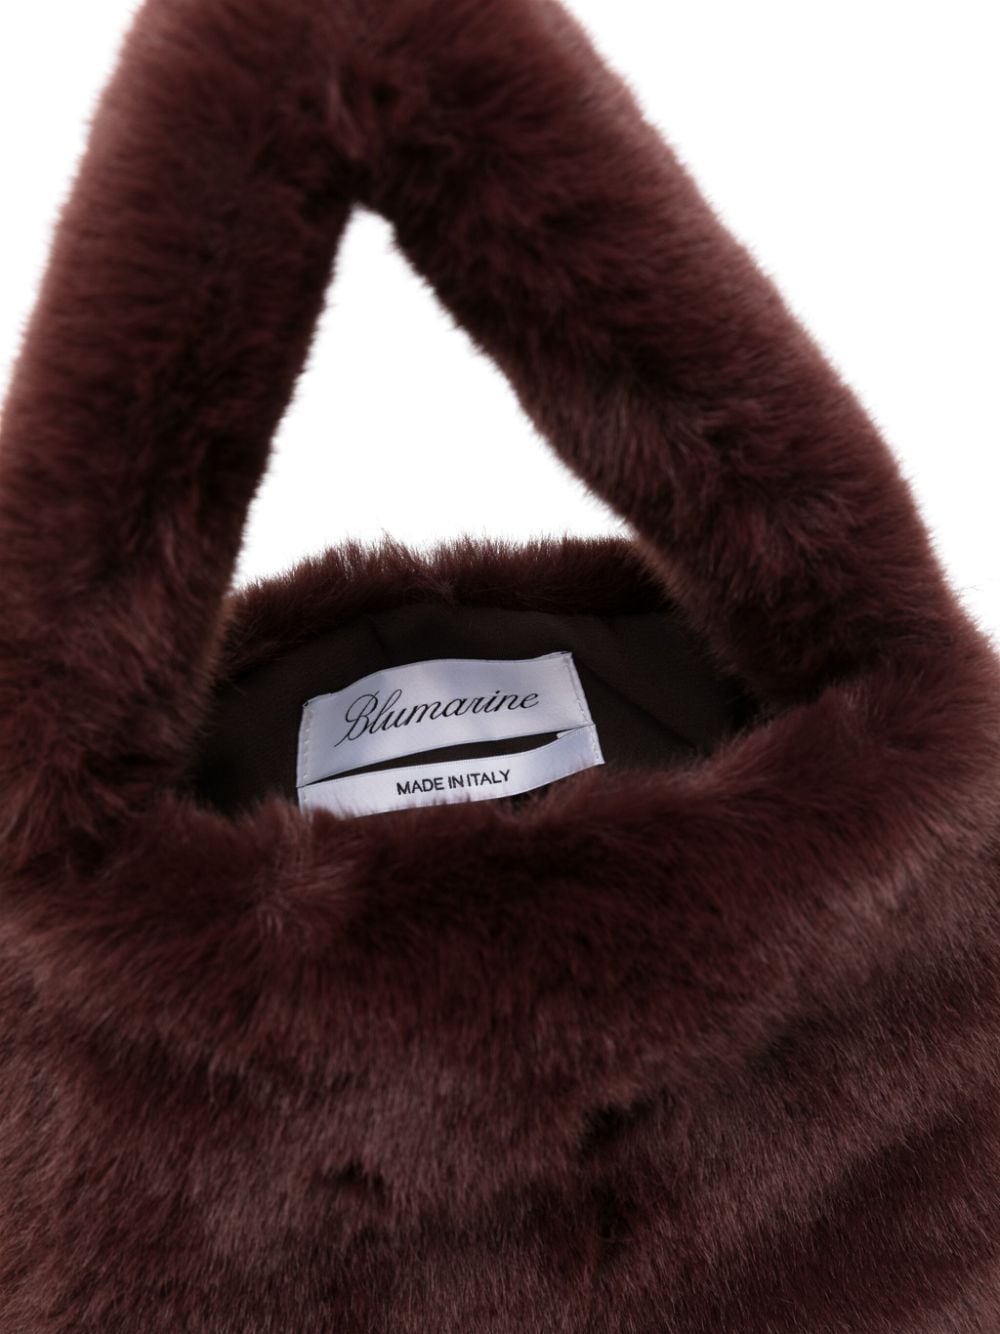 Blumarine Faux Fur Bag with Flap and Rhinestone Logo